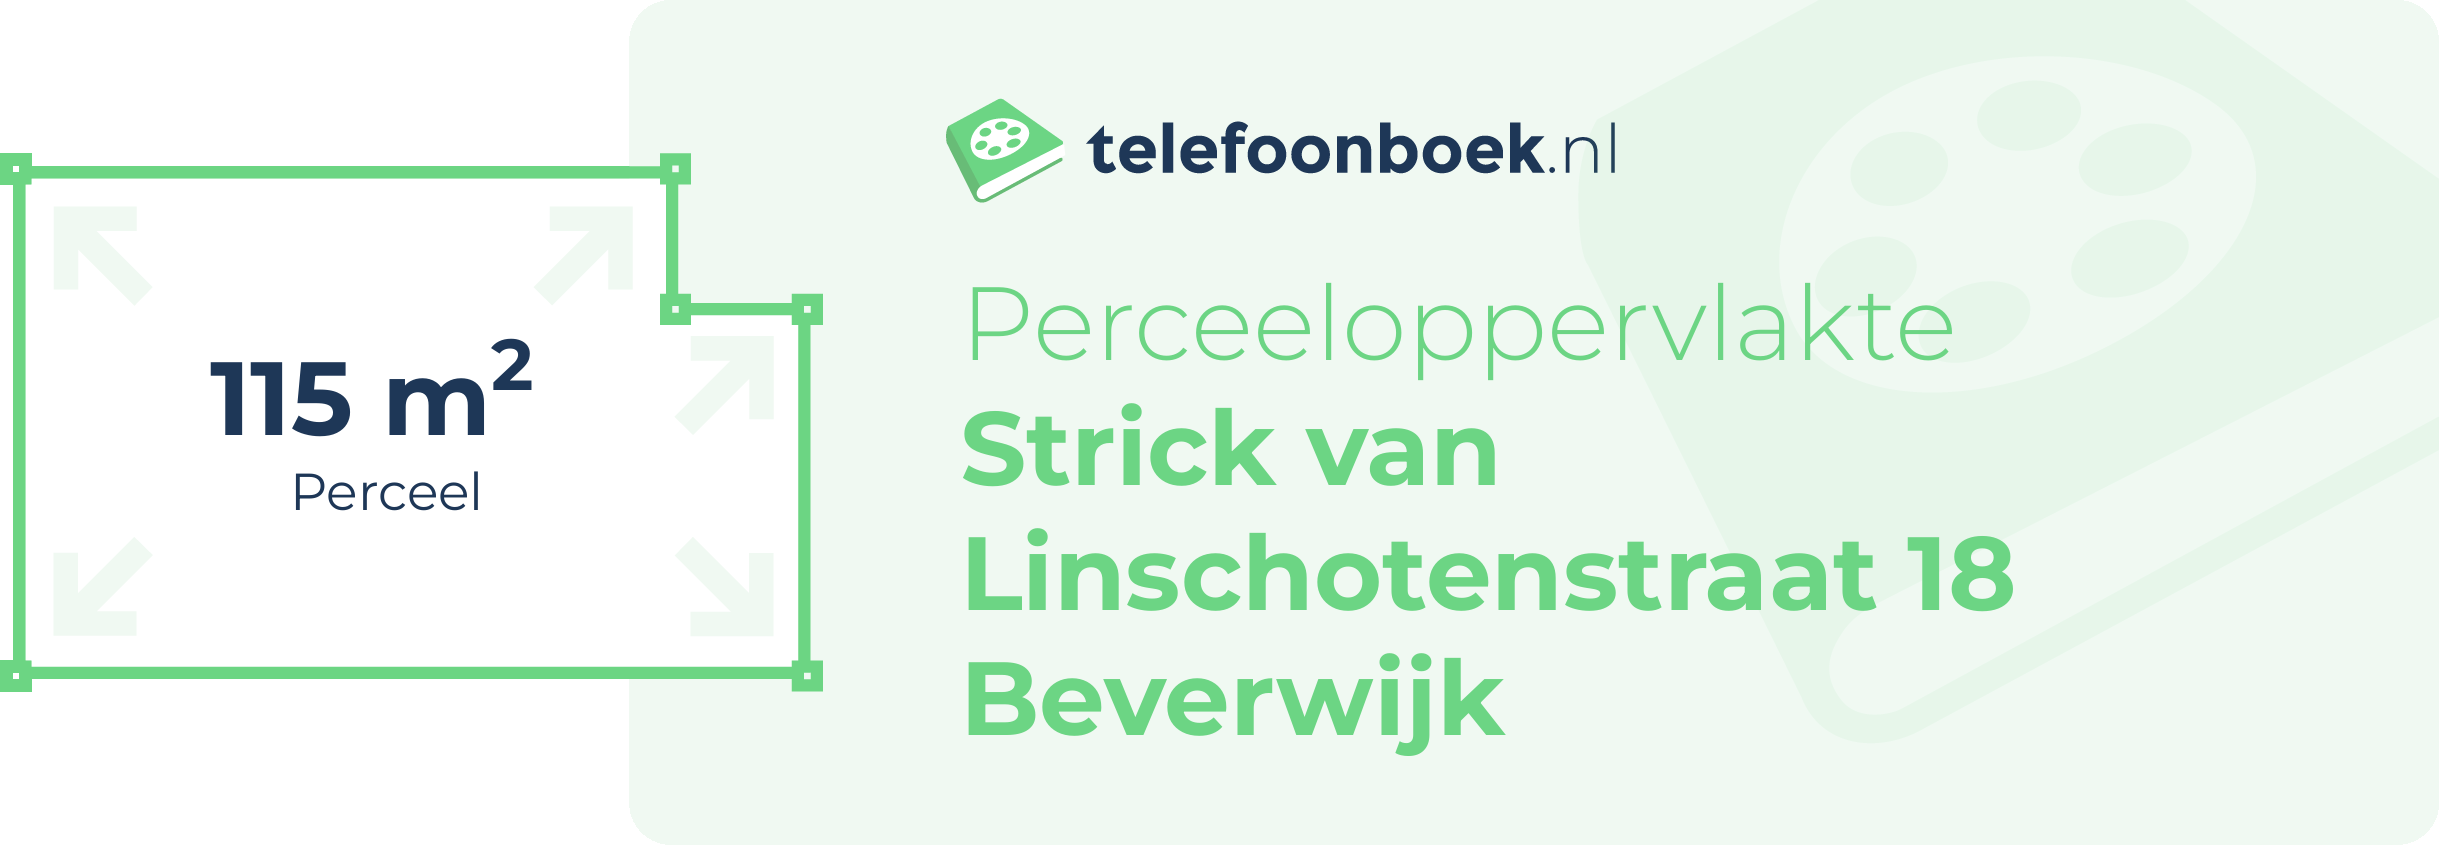 Perceeloppervlakte Strick Van Linschotenstraat 18 Beverwijk